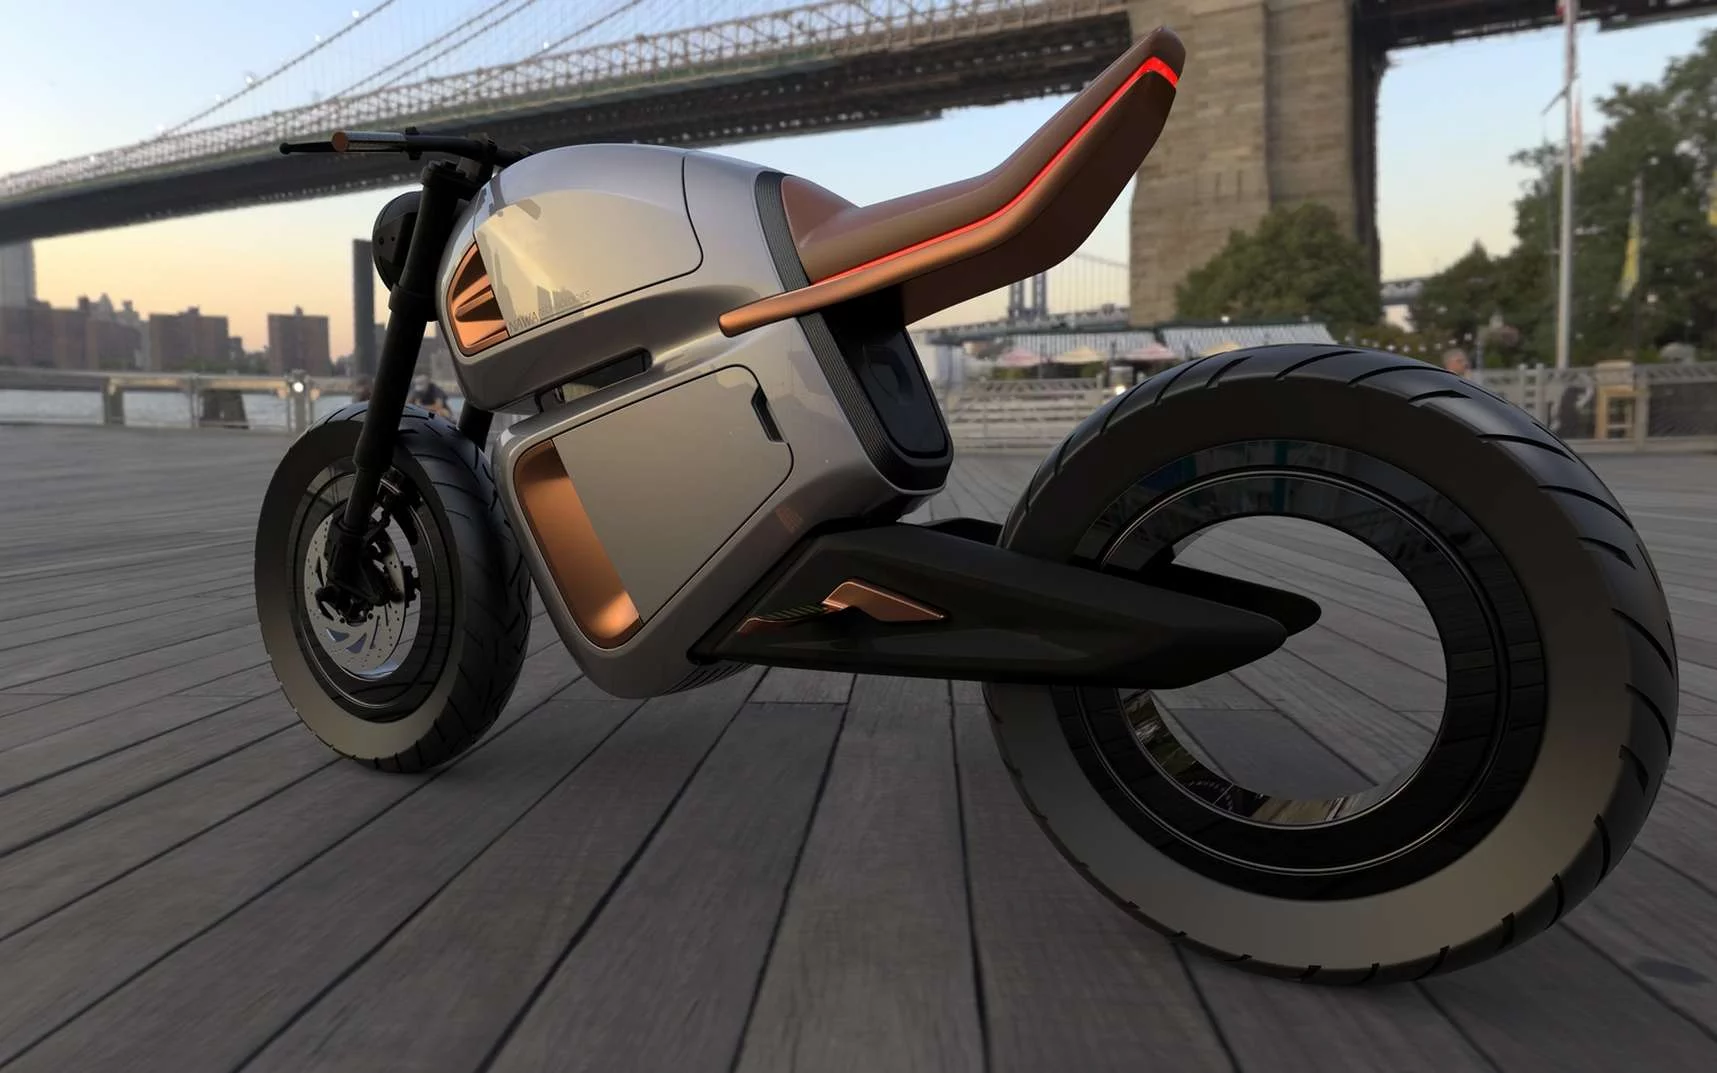 Comment bien choisir sa moto électrique ?